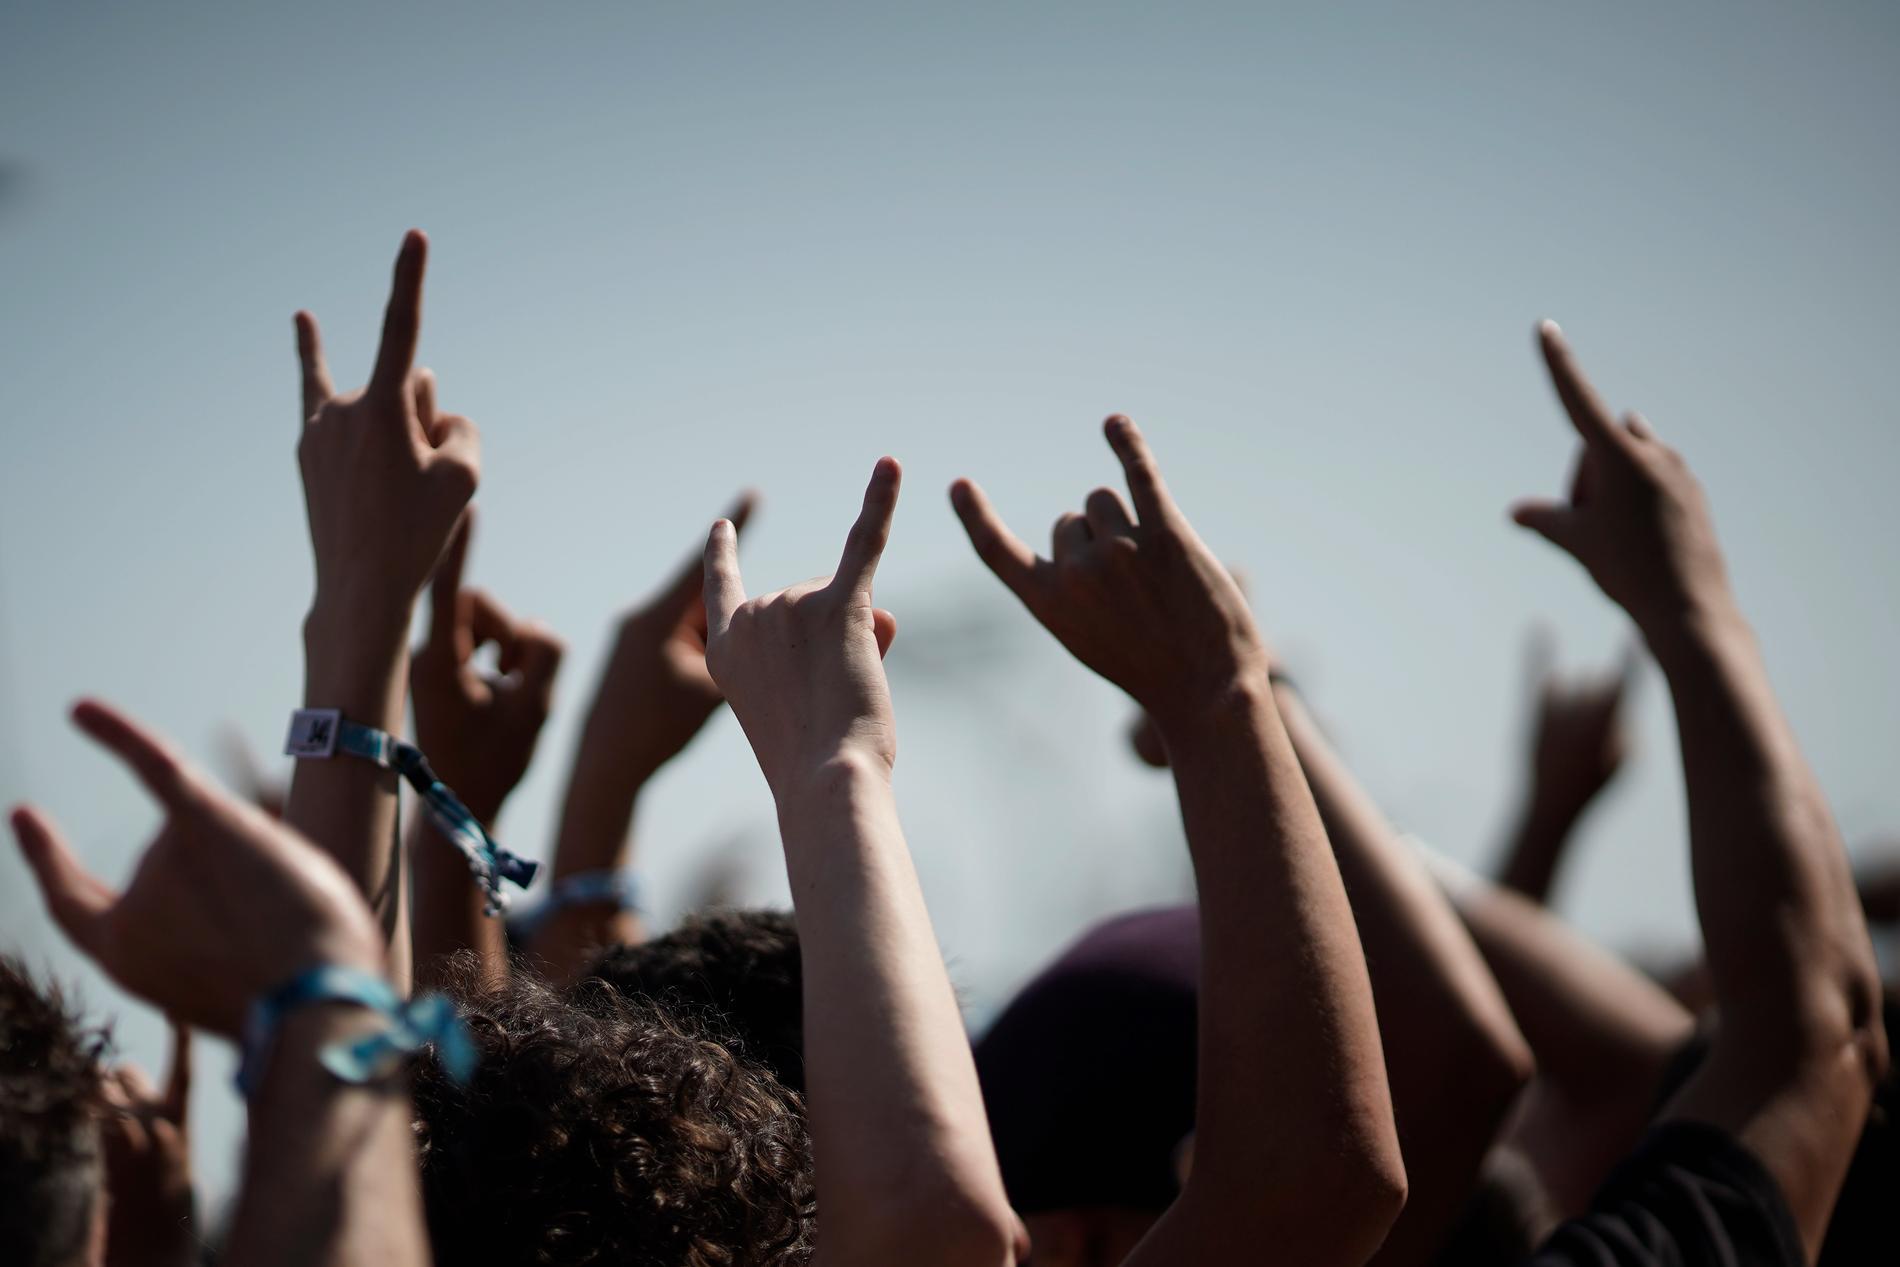 Det blir varken "djävulshorn" eller headbanging på Gefle Metal Festival i år. Festivalen ställer in årets evenemang. Arkivbild.